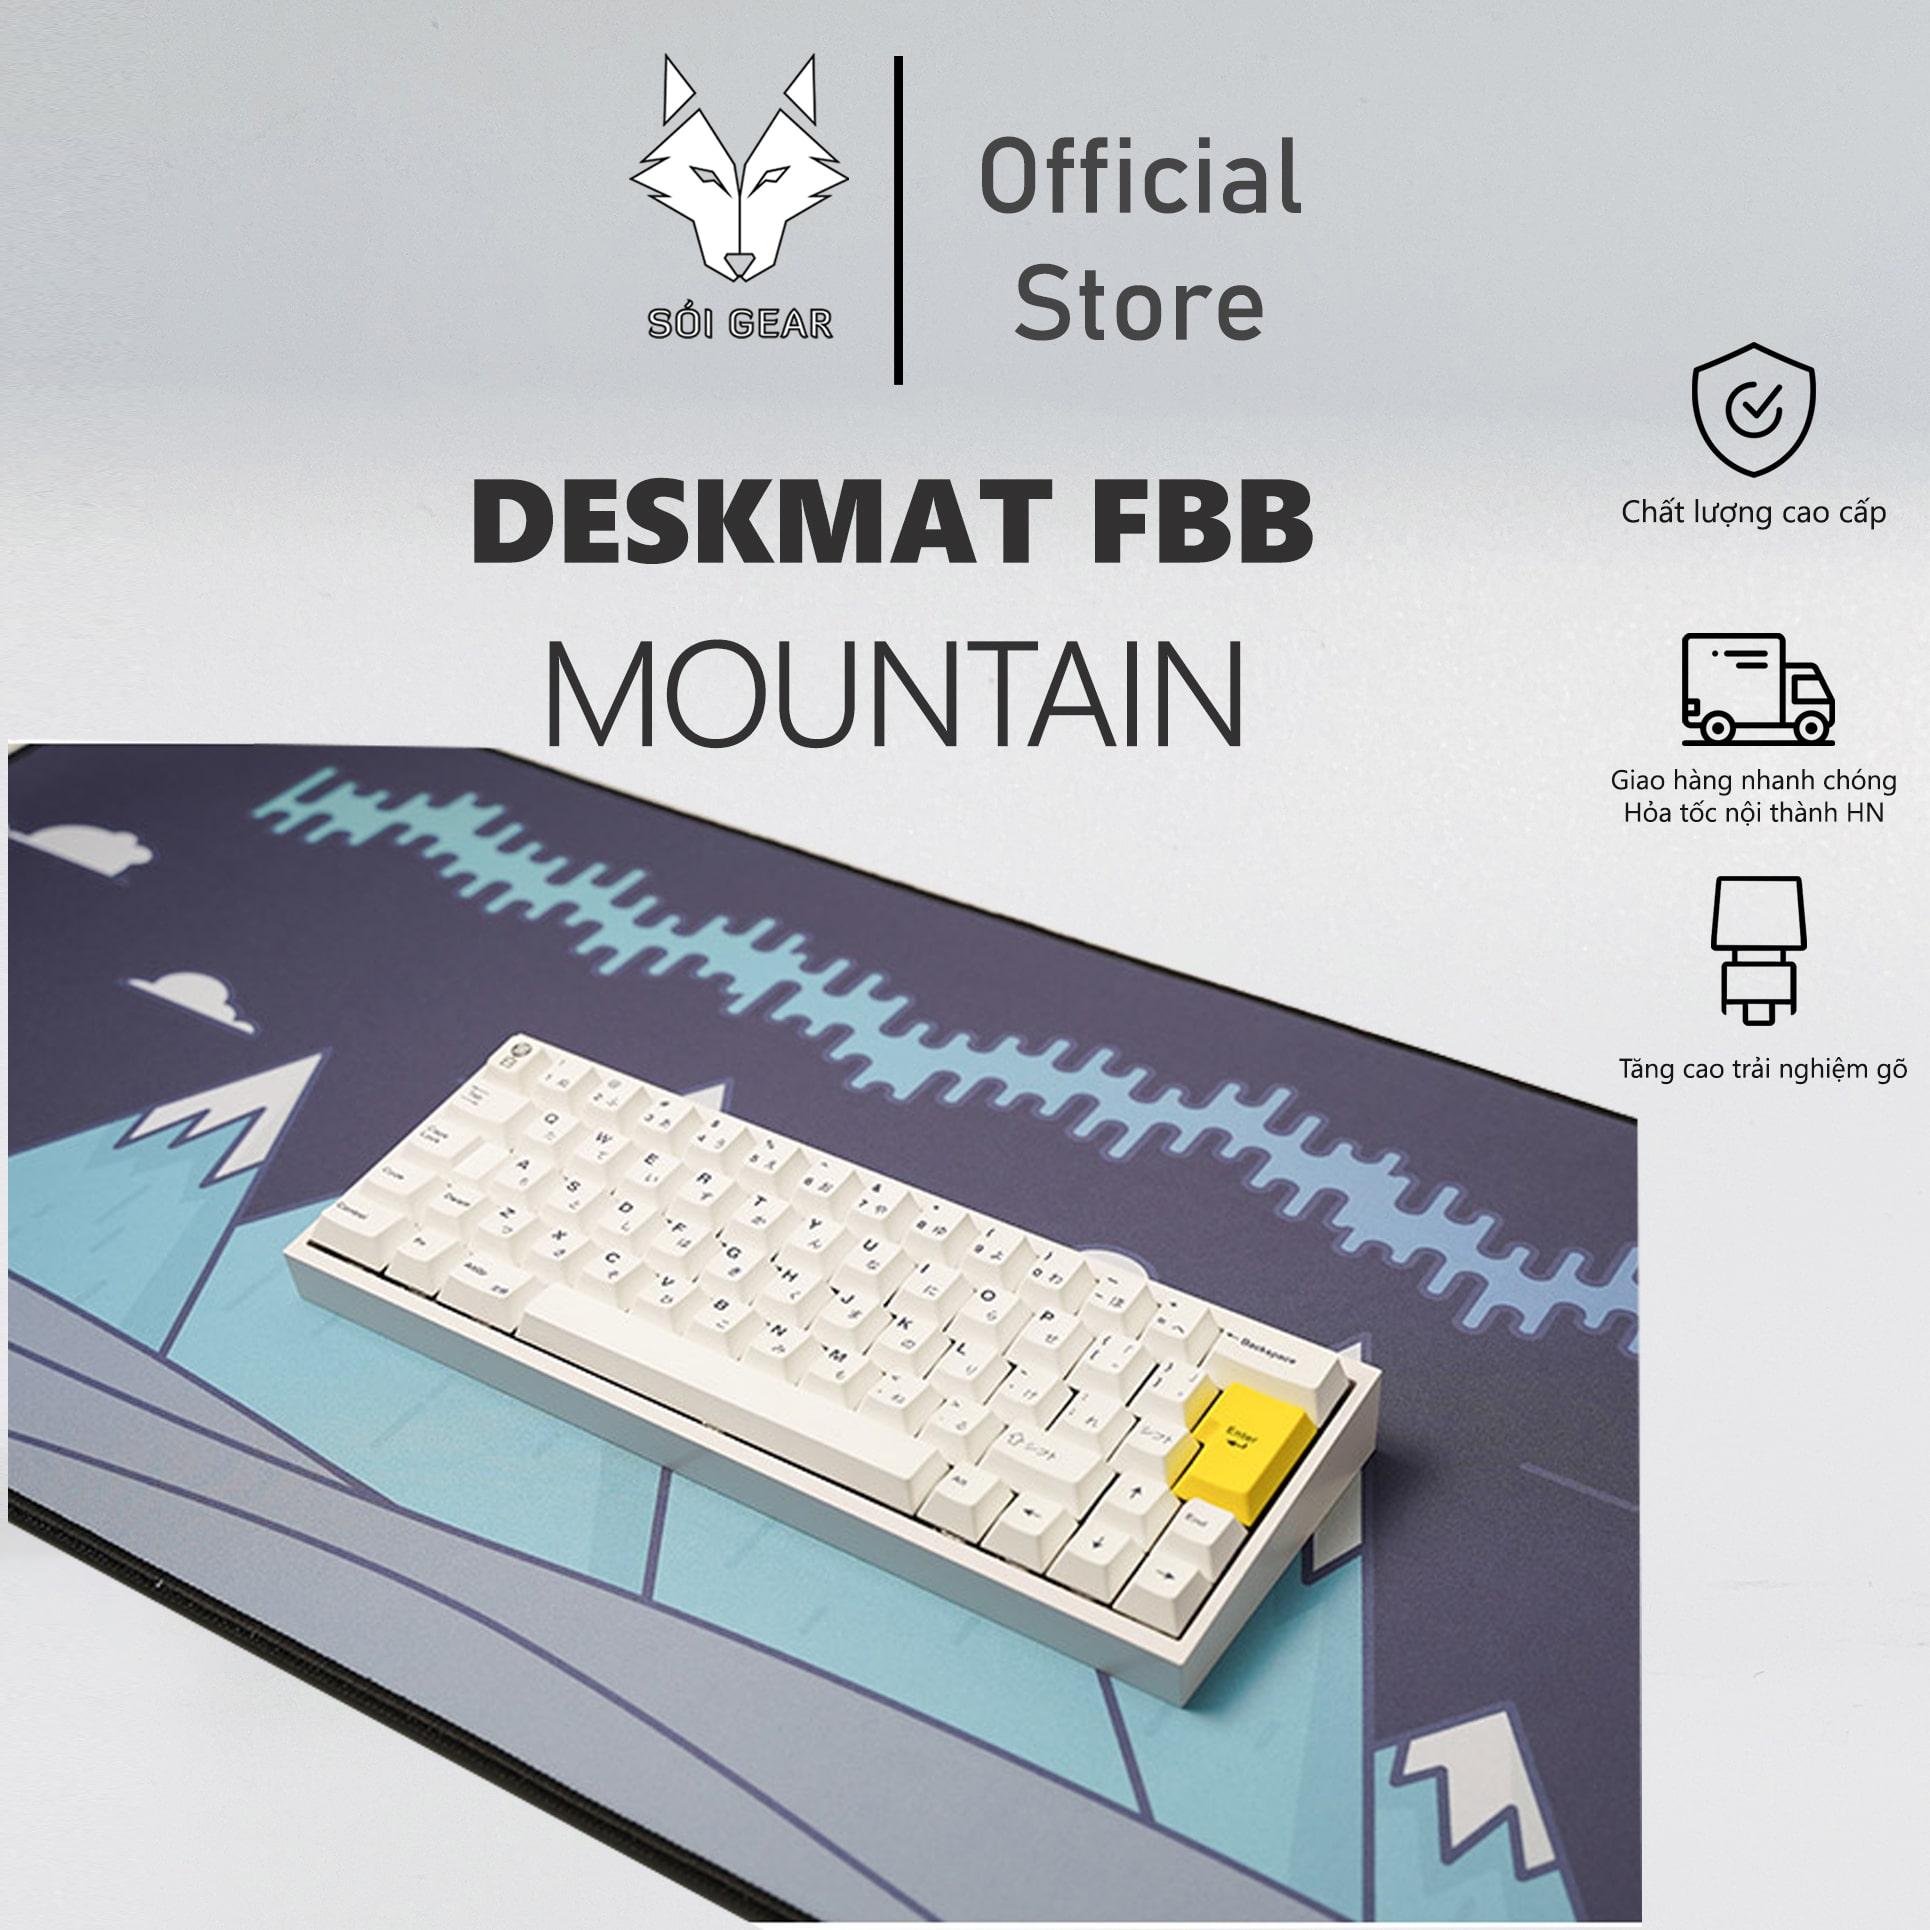 Deskmat FBB Mountain